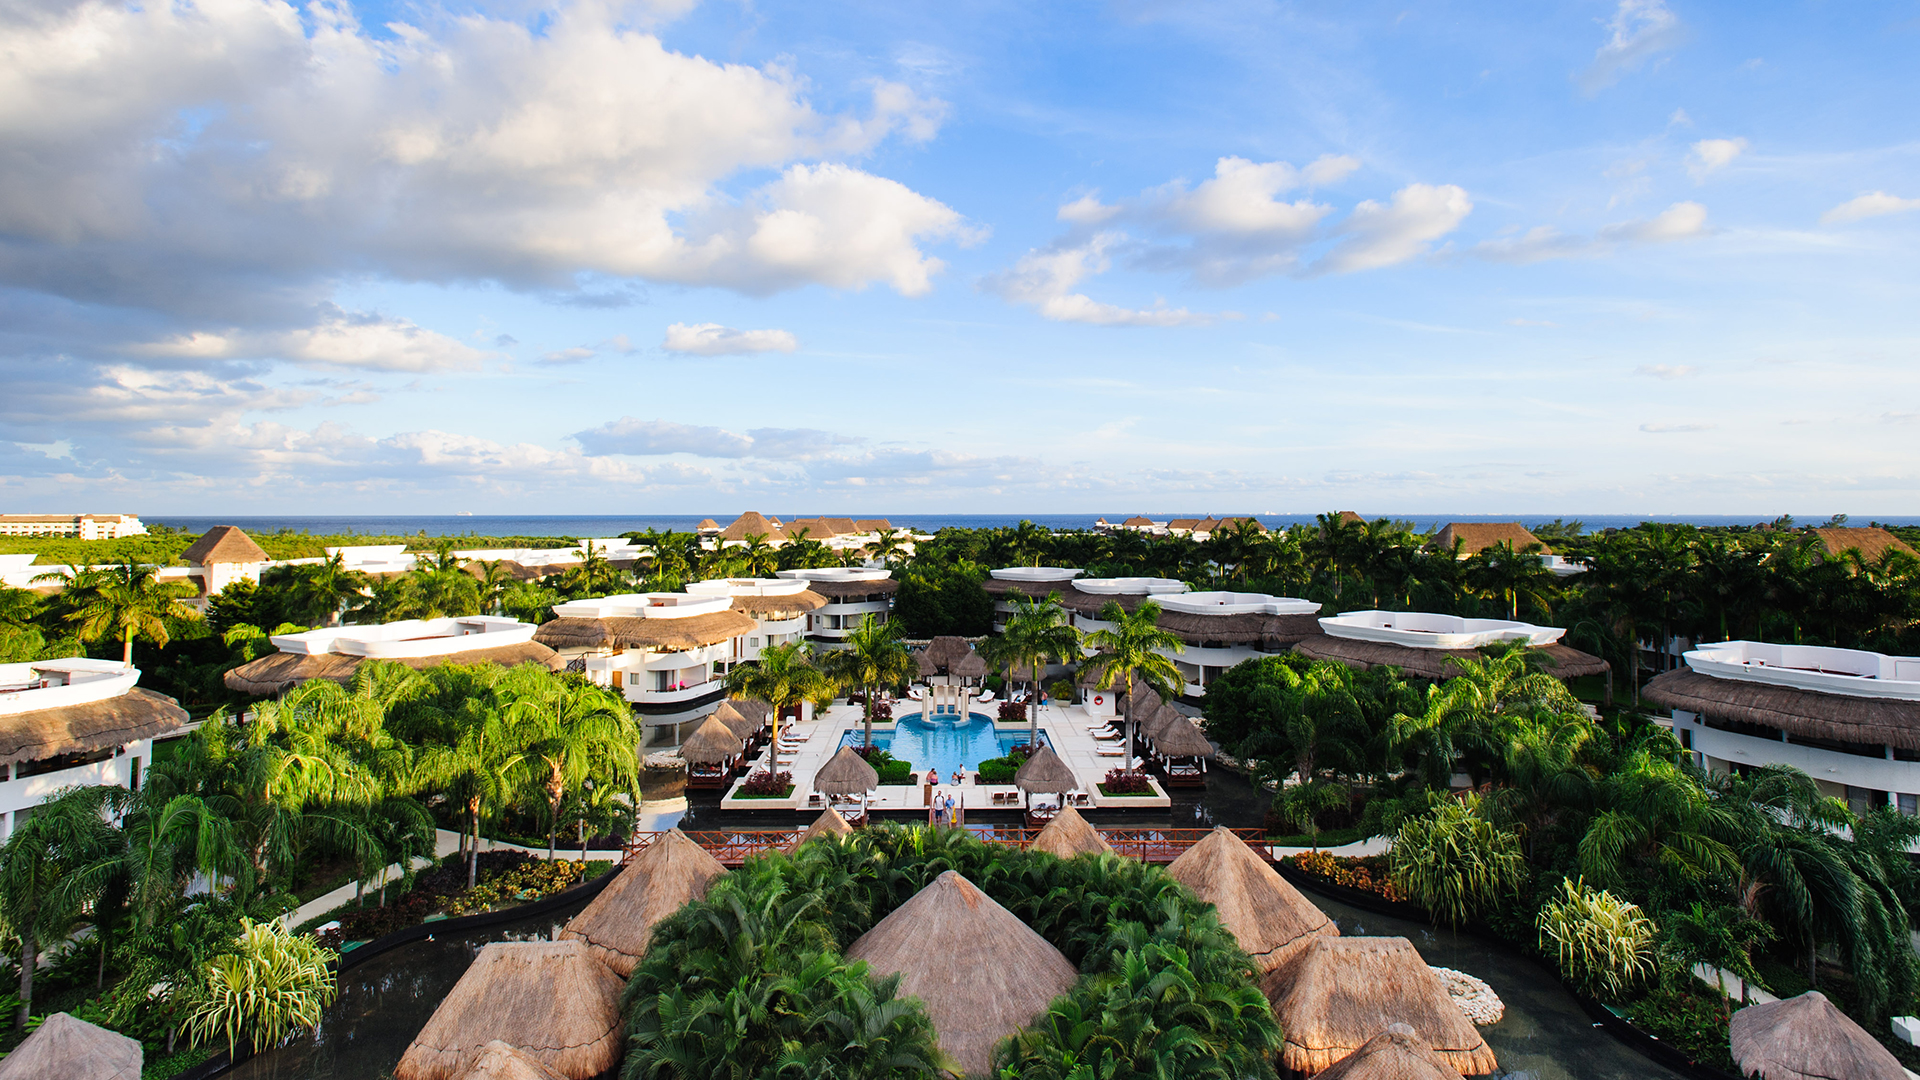 royal-holiday-hotel-resort-panorama-grand-riviera-princess-mexico-quintana-roo-riviera-maya-playa-de-carmen